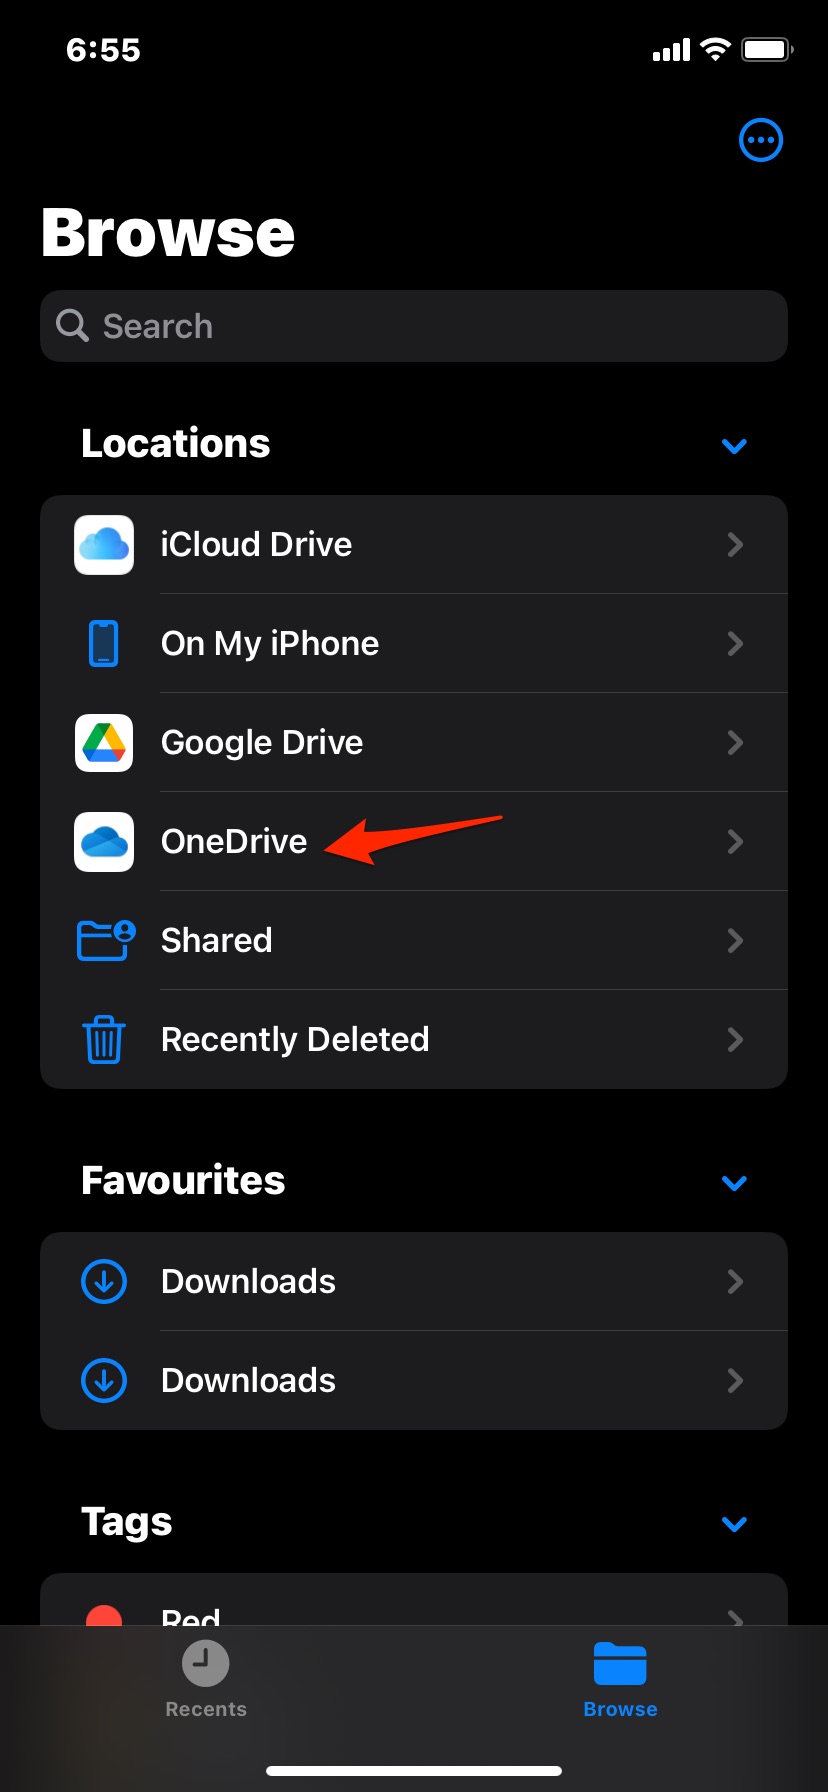 Open OneDrive on Files App